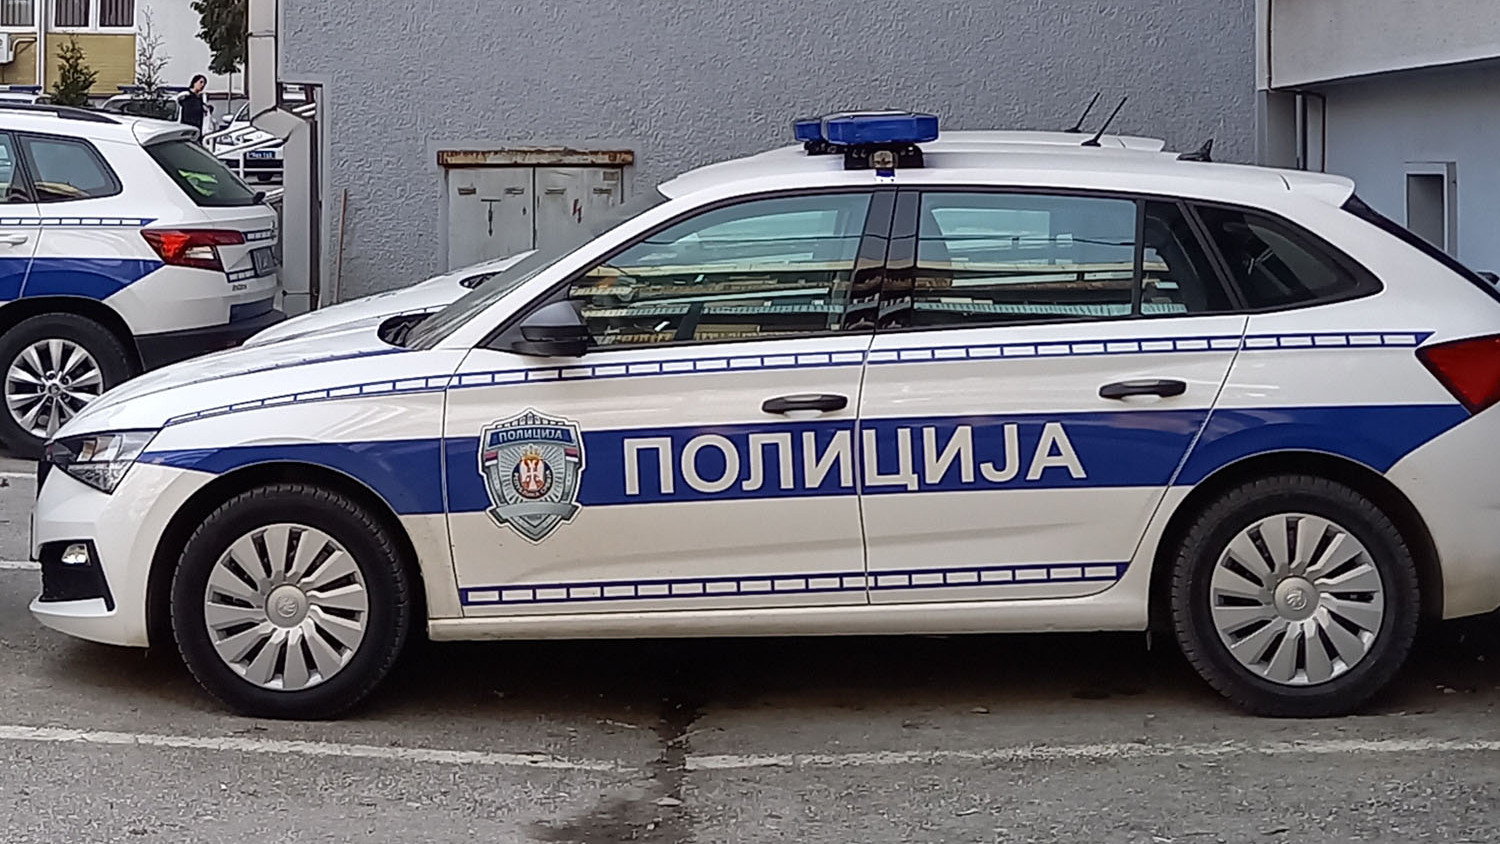 Prijavio policiji u Sremskoj Mitrovici lažni napad, sledi mu krivična prijava 1